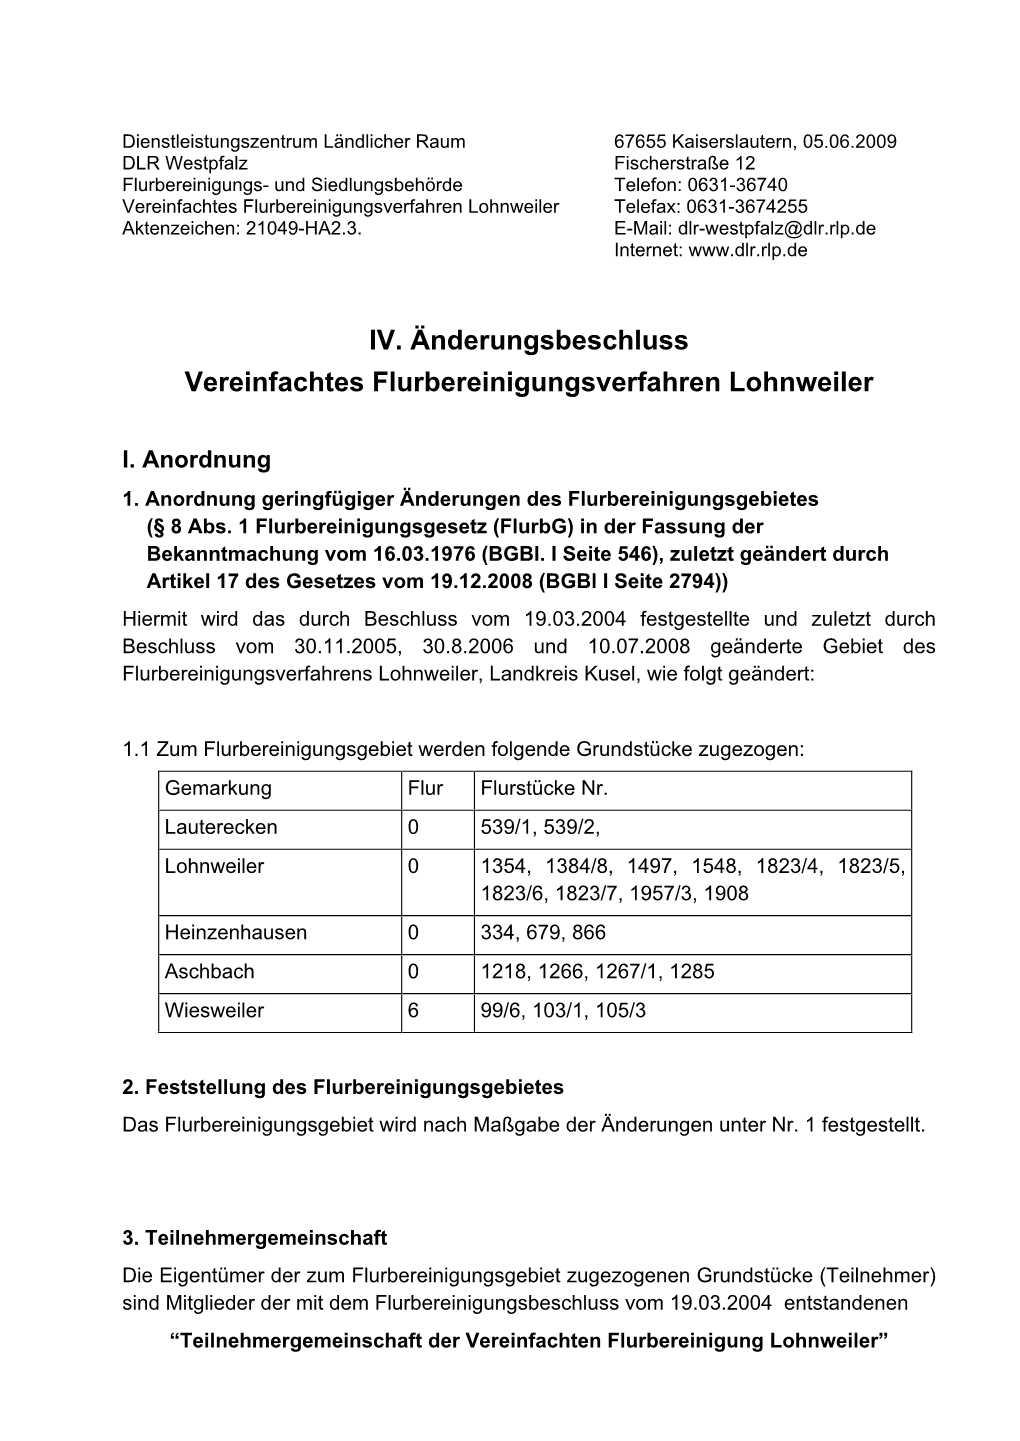 IV. Änderungsbeschluss Vereinfachtes Flurbereinigungsverfahren Lohnweiler